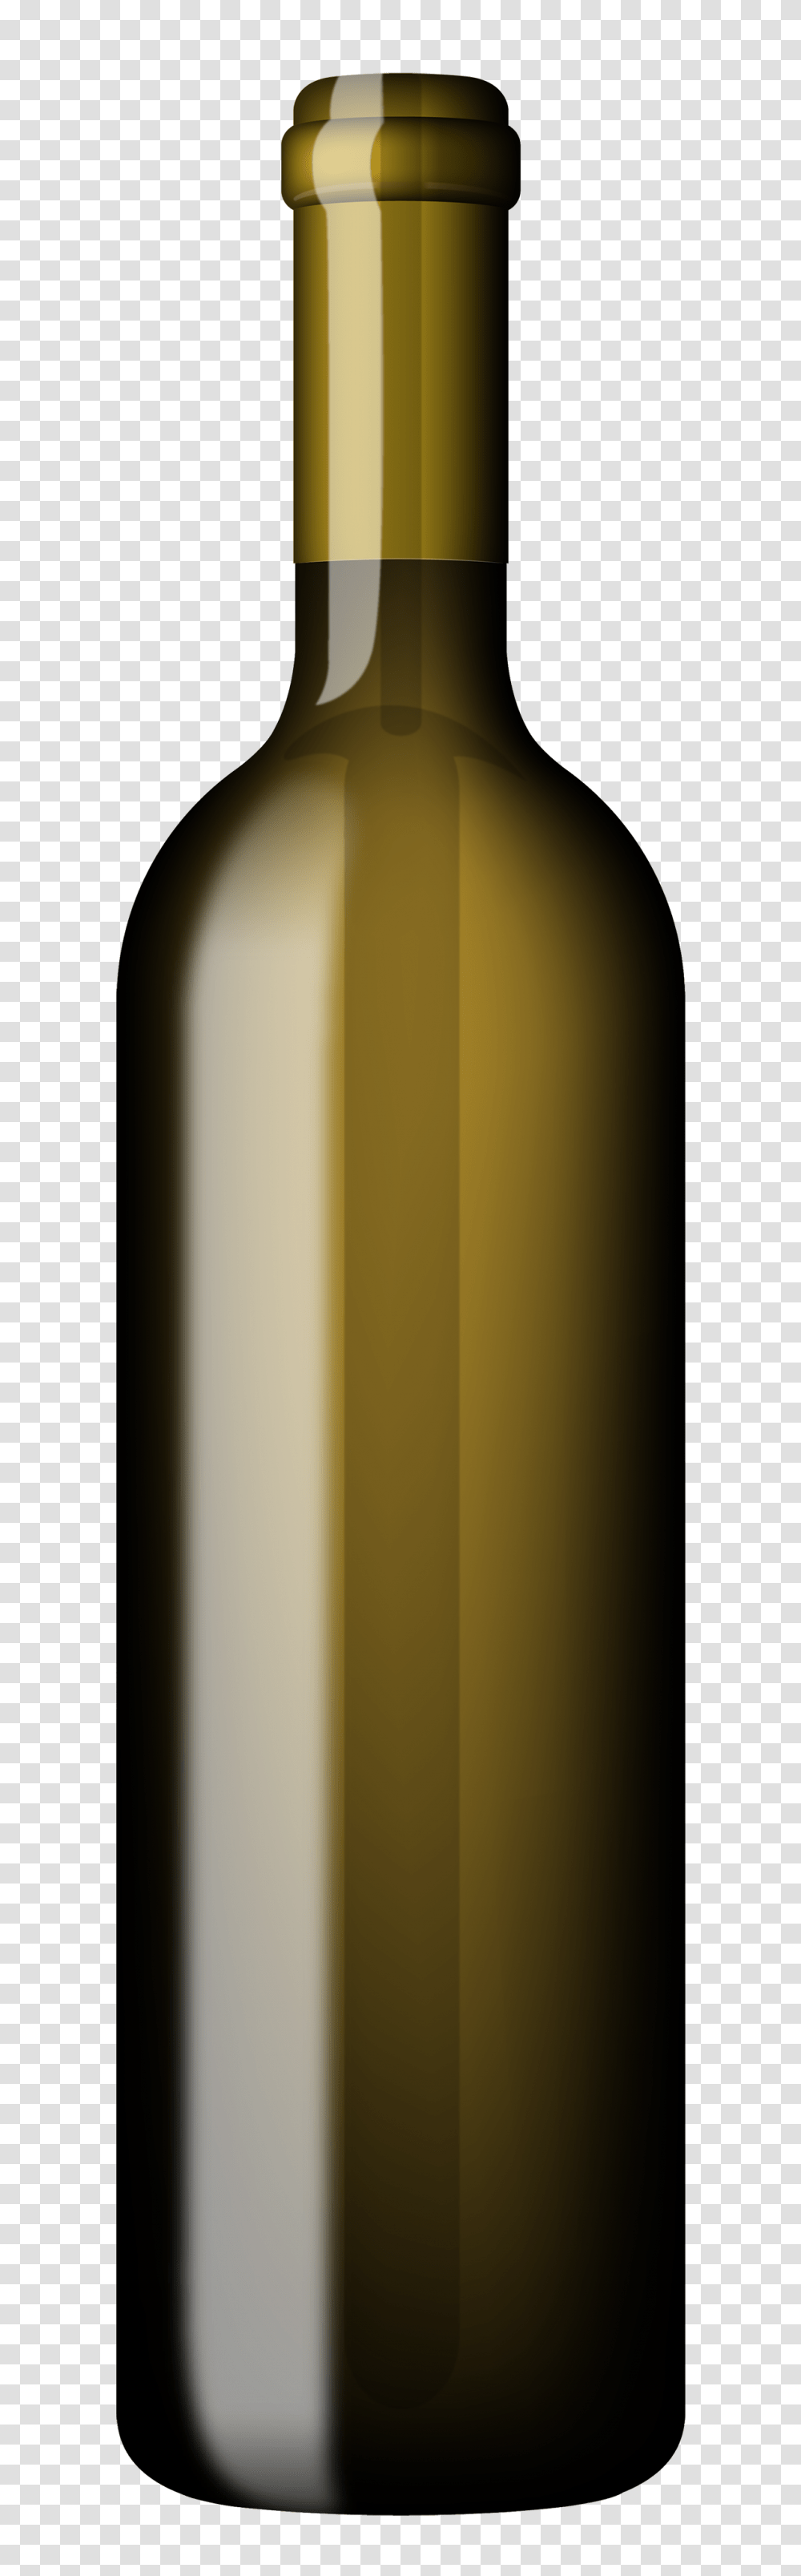 Green Bottle Of Wine Clipart, Alcohol, Beverage, Drink, Wine Bottle Transparent Png